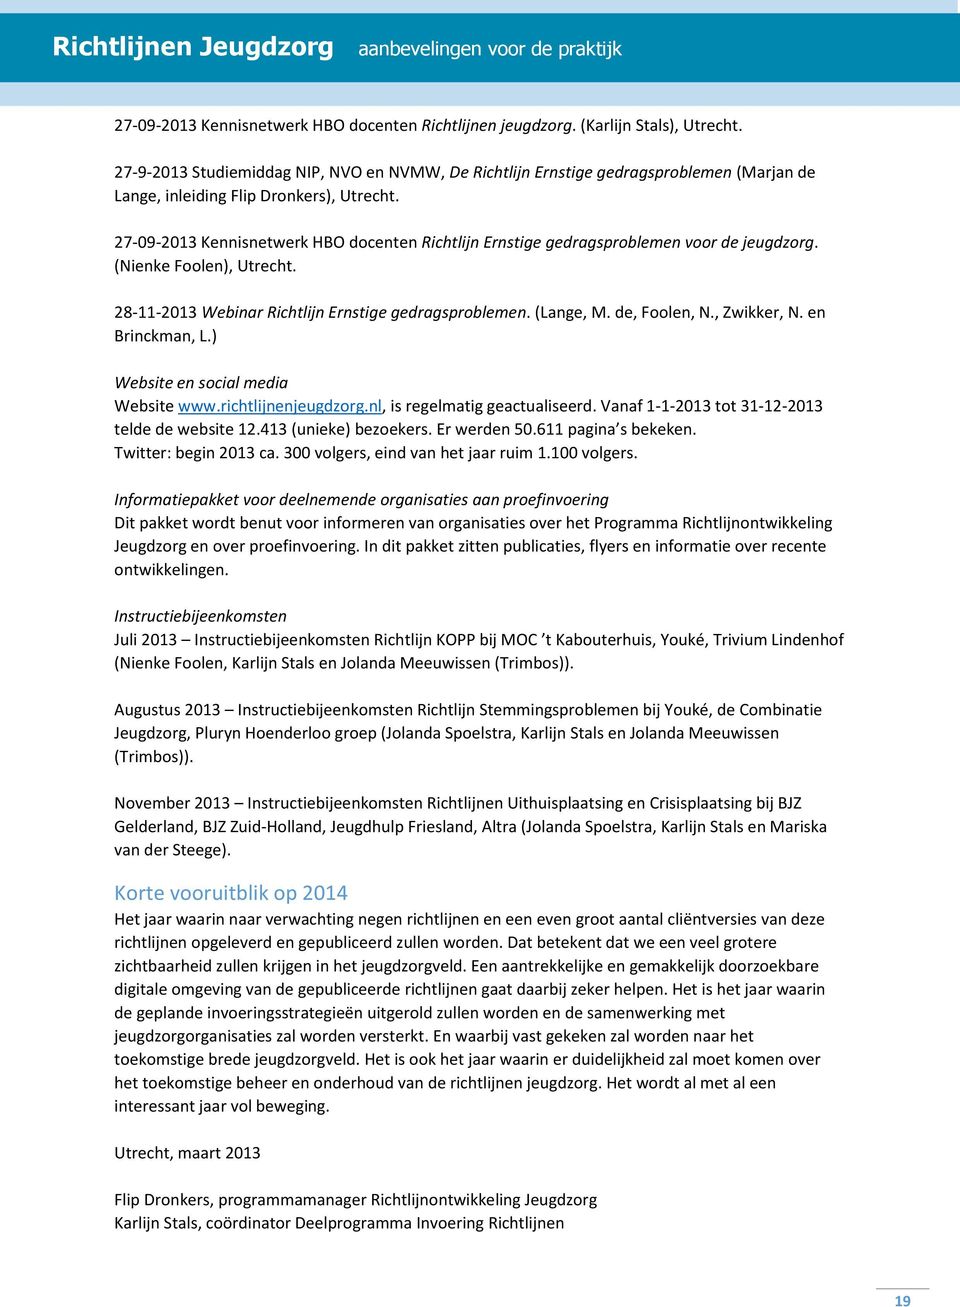 27-09-2013 Kennisnetwerk HBO docenten Richtlijn Ernstige gedragsproblemen voor de jeugdzorg. (Nienke Foolen), Utrecht. 28-11-2013 Webinar Richtlijn Ernstige gedragsproblemen. (Lange, M. de, Foolen, N.